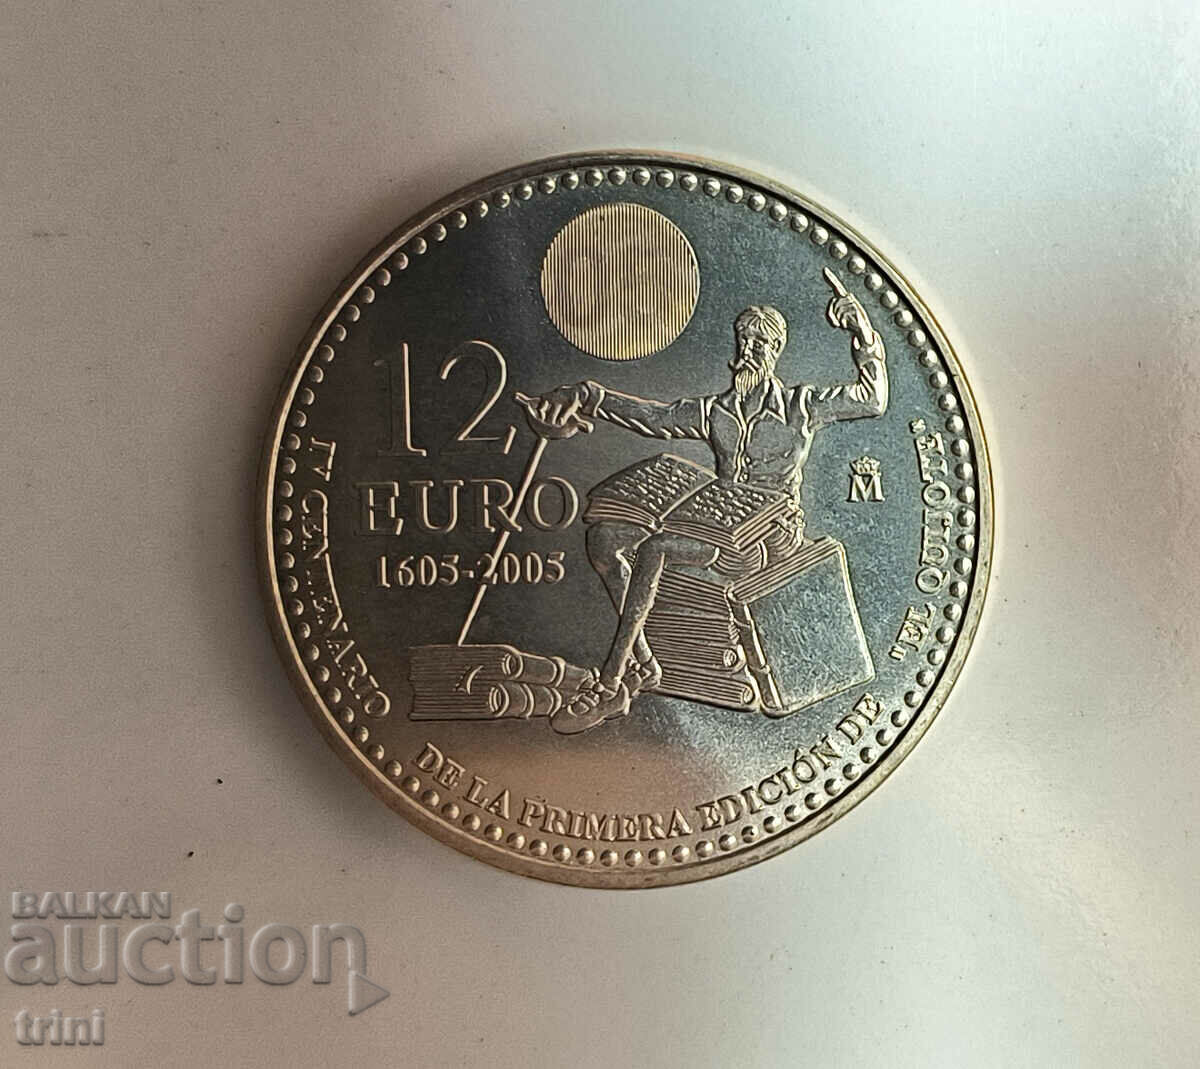 Испания 12 евро 2005 400 години Дон Кихот  д135